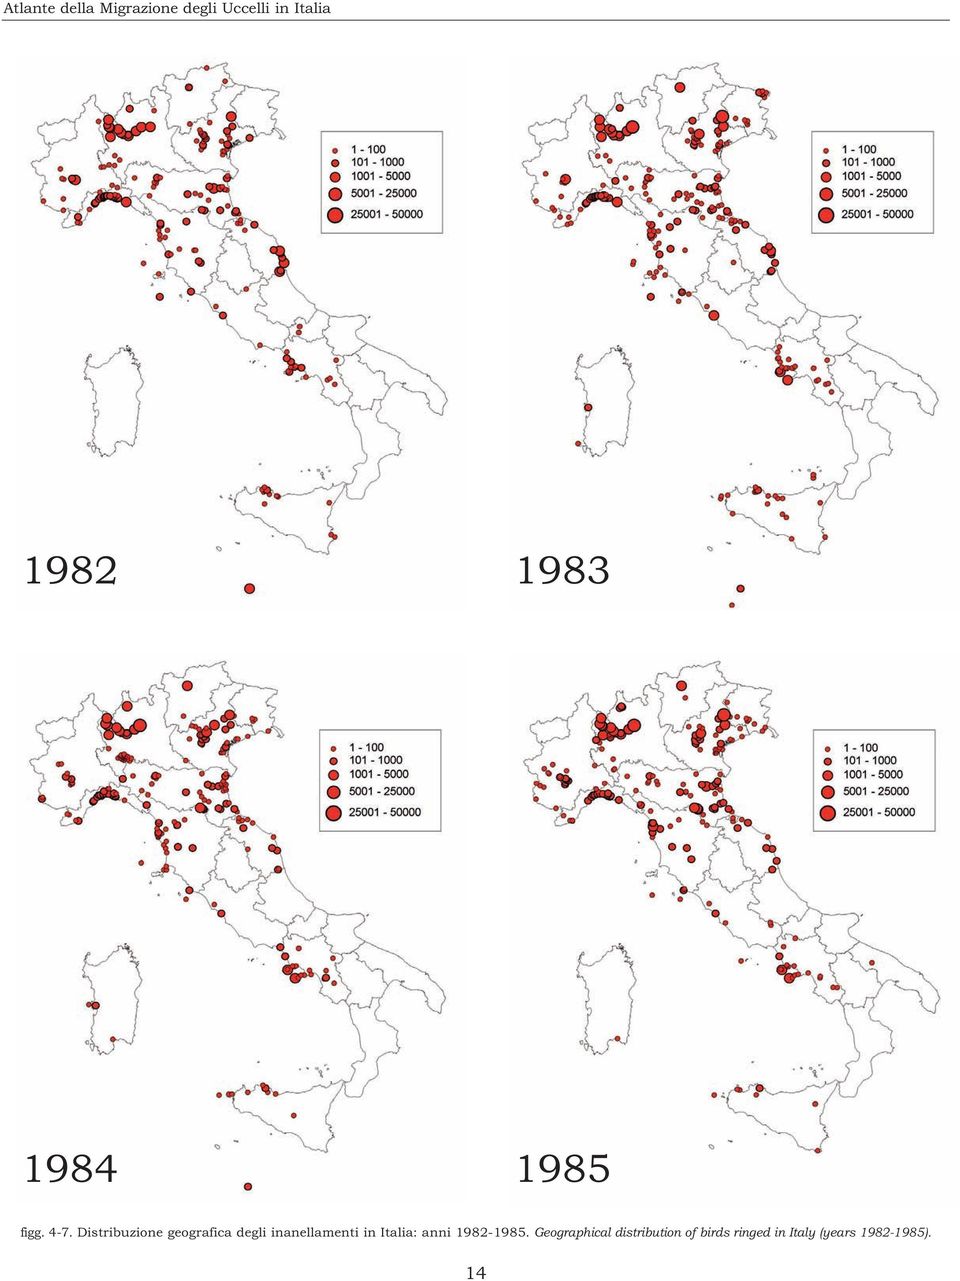 Distribuzione geografica degli inanellamenti in Italia: